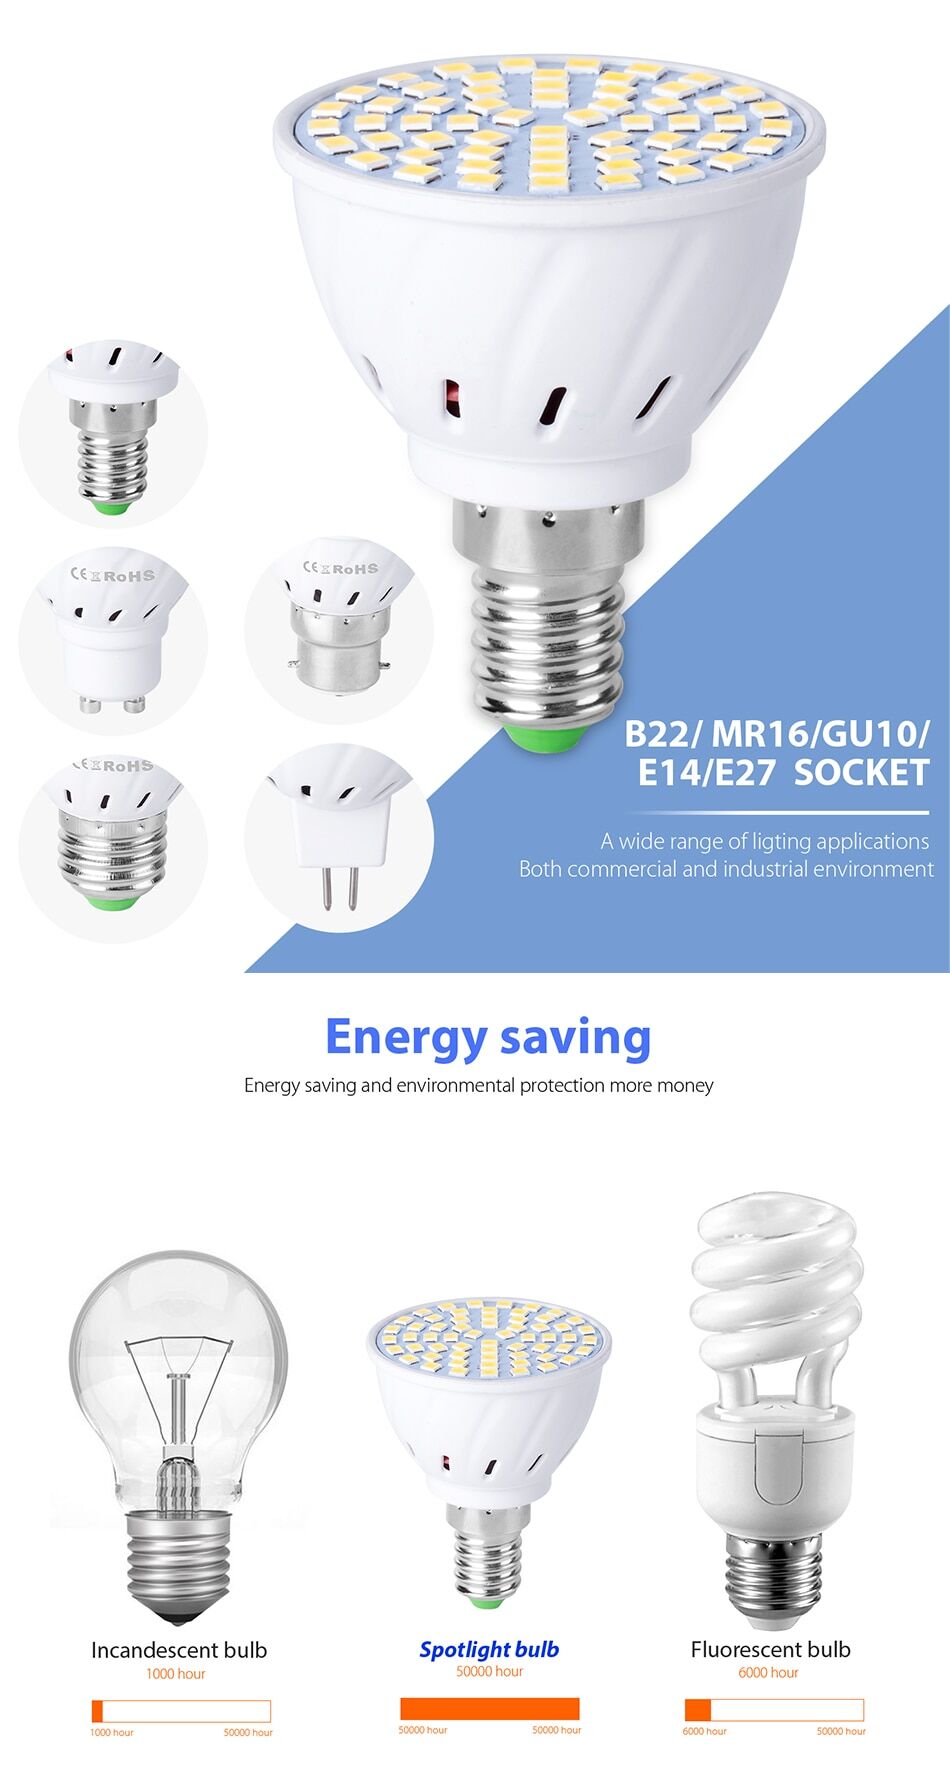 10pce 220v spot light bulbs led 4w 6w 8w socket e27 e14 gu10 mr16 b22 € 26,60